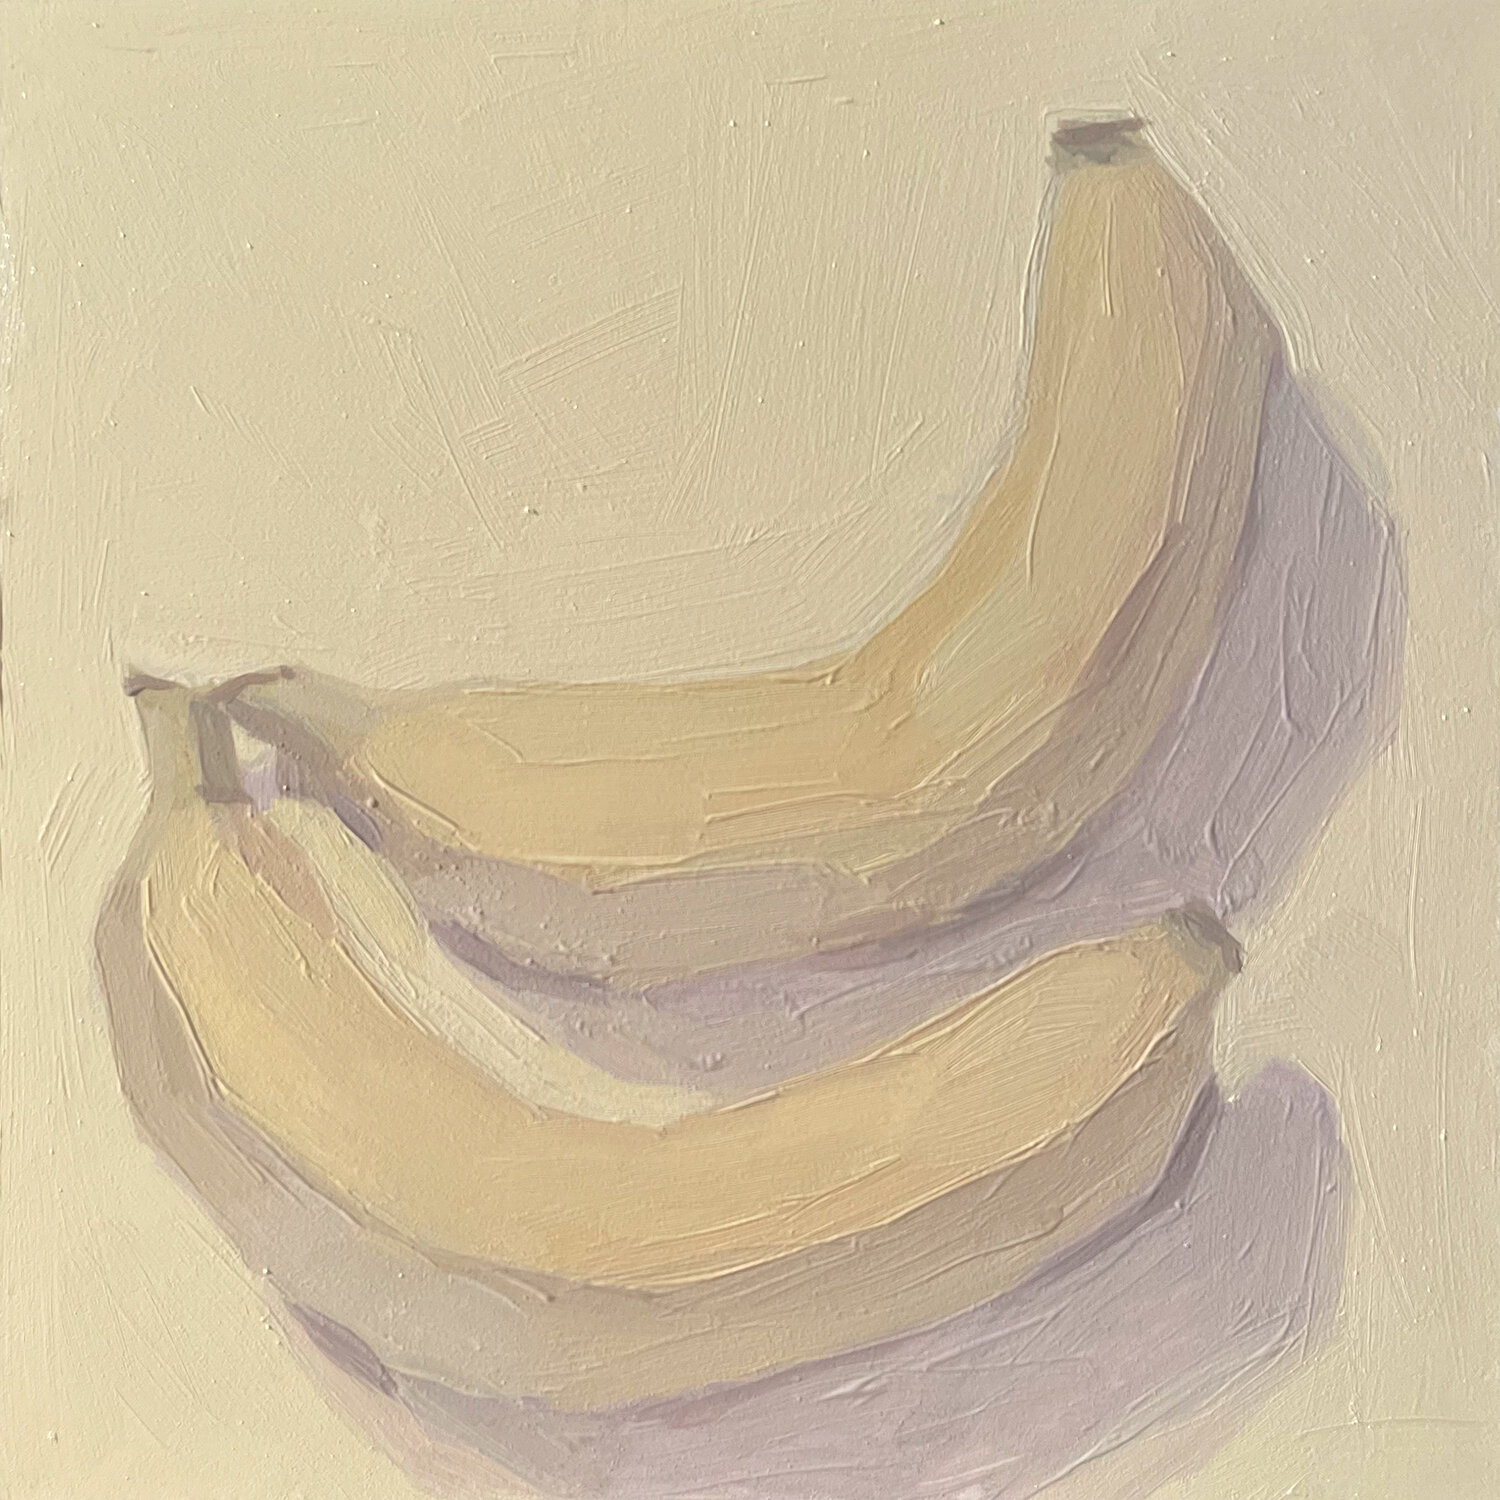 Bananas 3